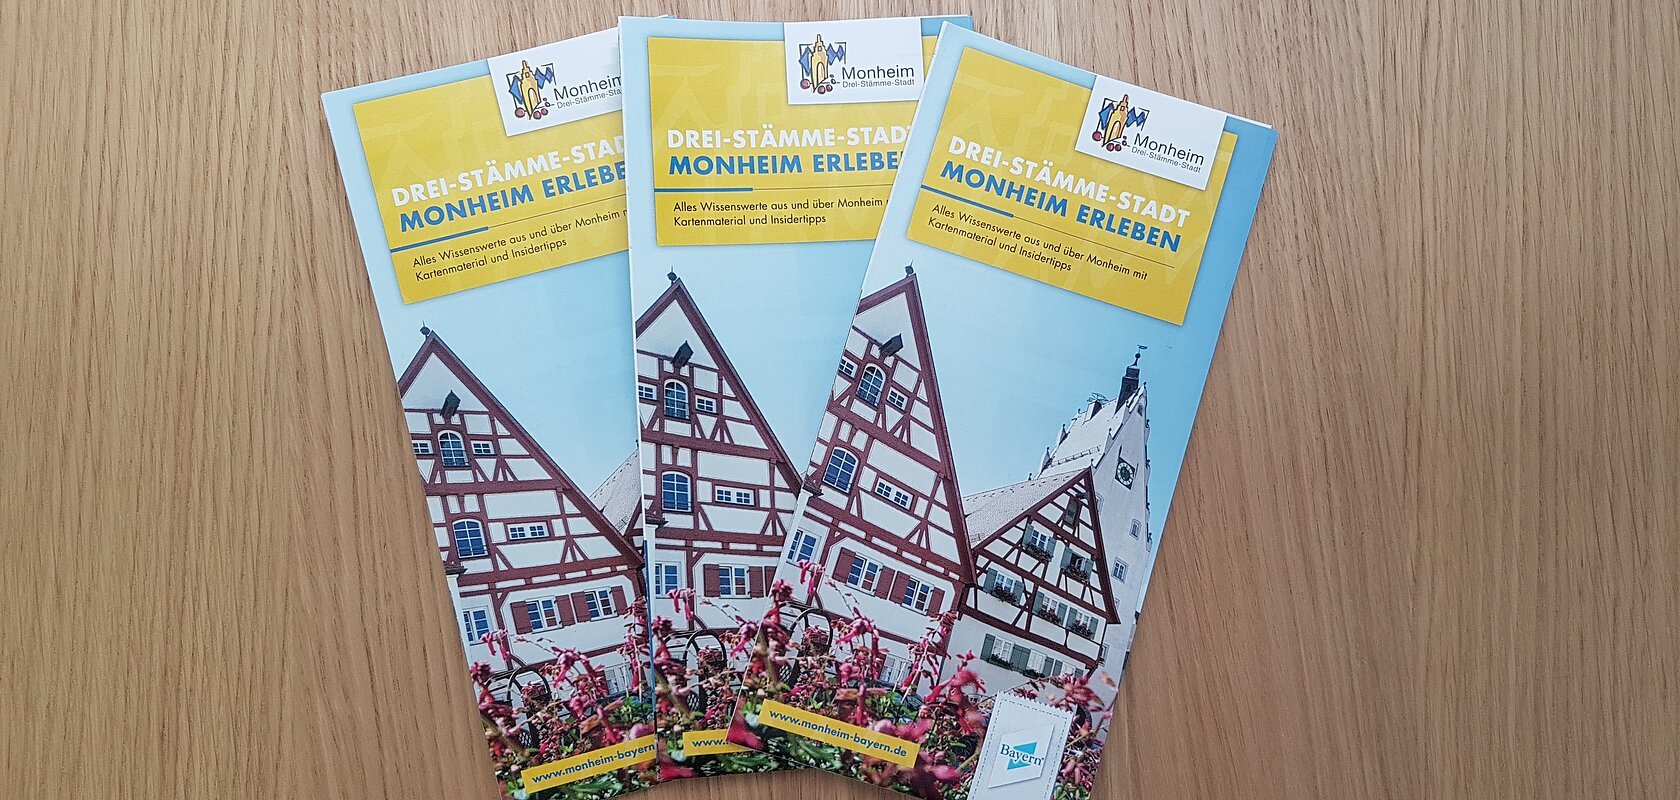 Folder 3-Stämme-Stadt Monheim erleben